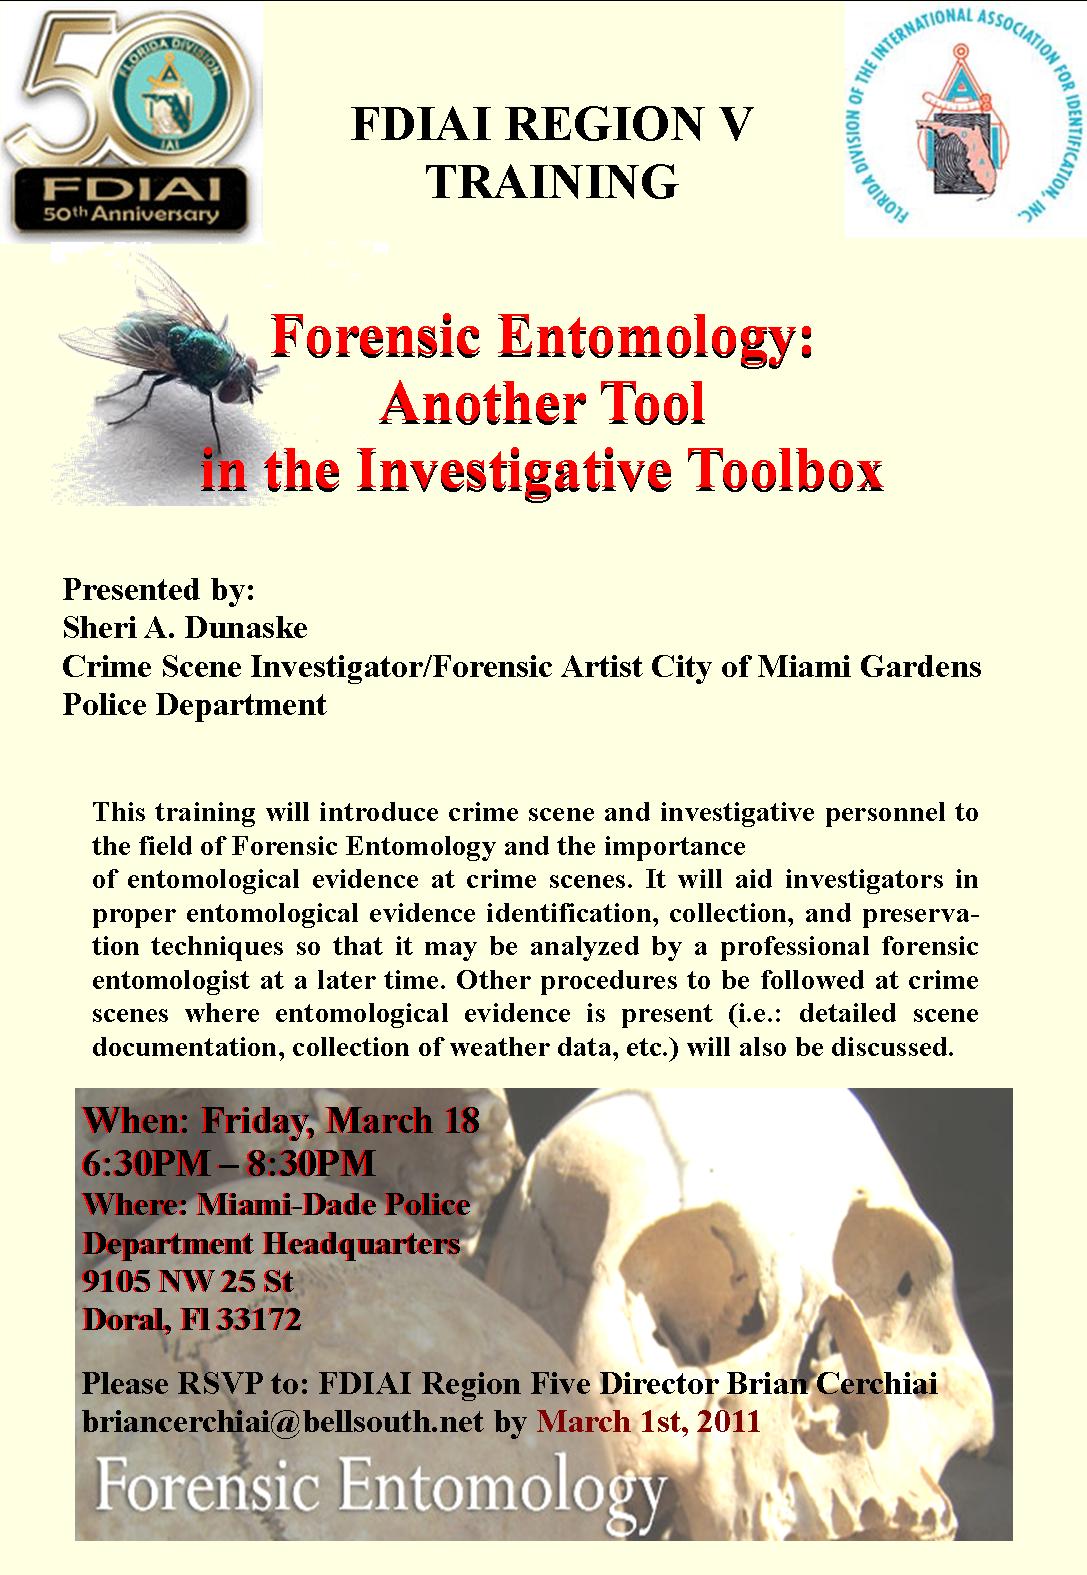 Forensic Entomology Training